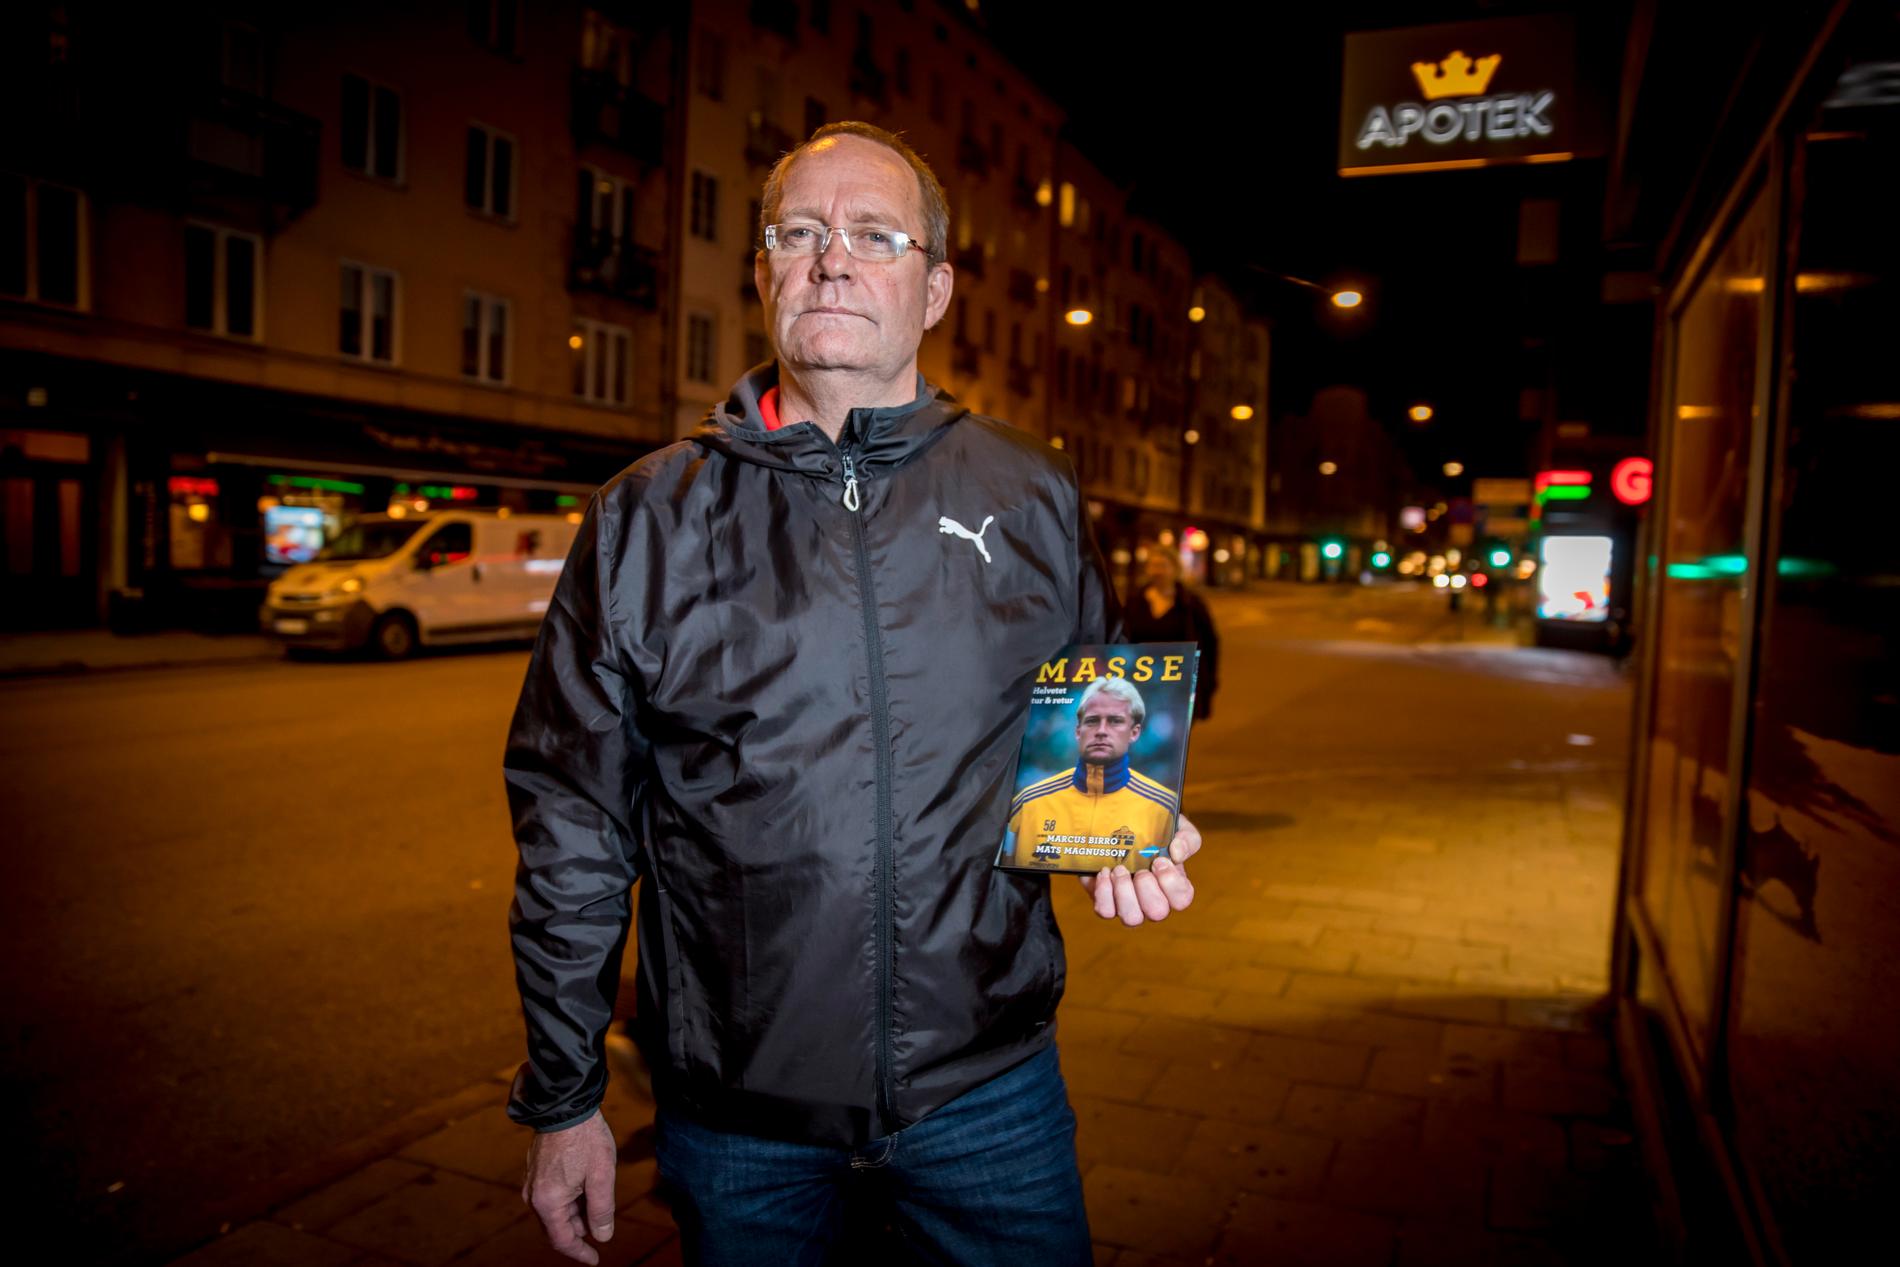 Mats Magnussons bok ”Masse – helvetet tur & retur” släpps i dagarna.